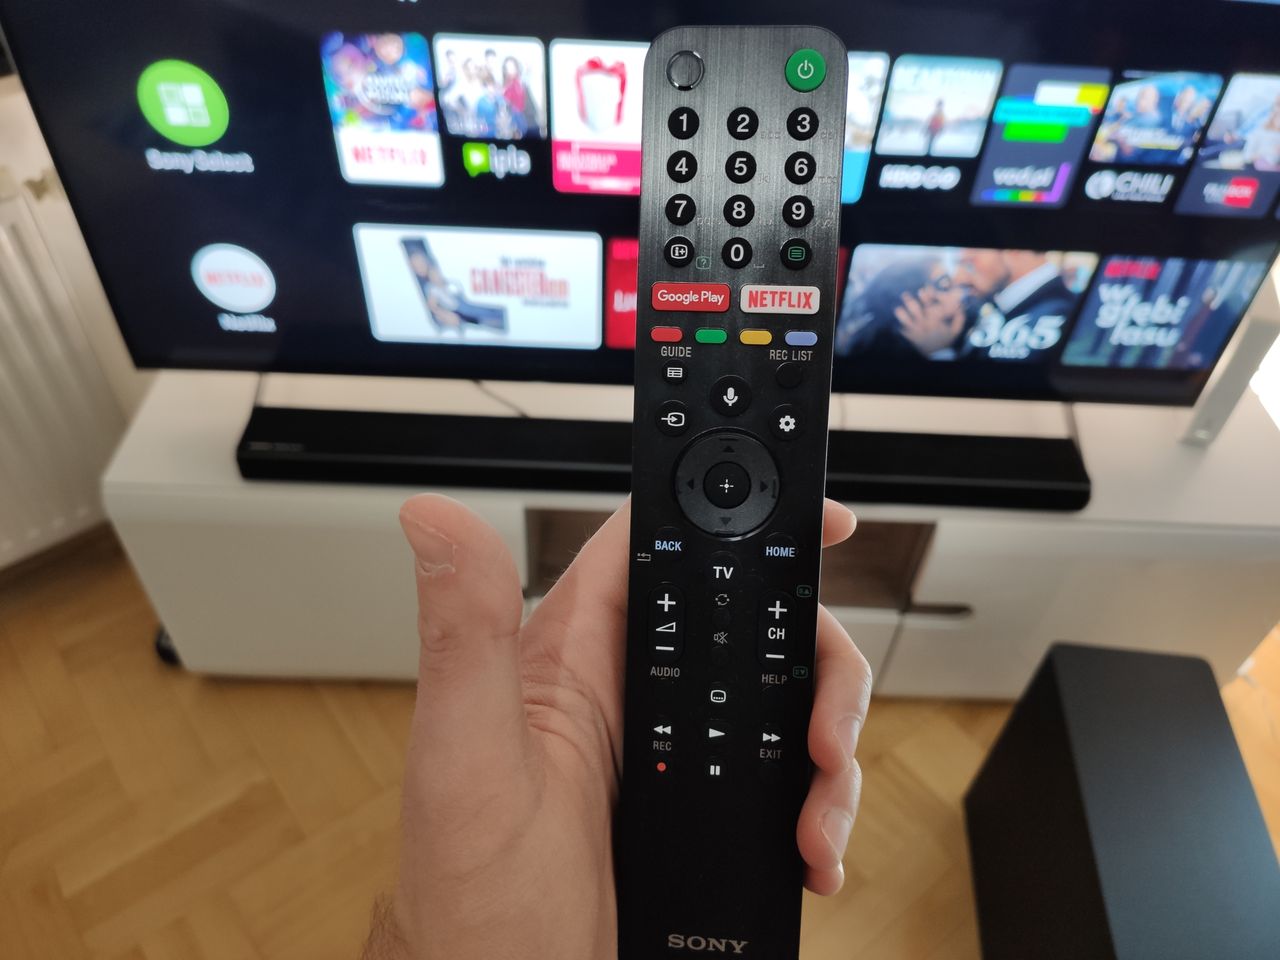 Apple TV trafia na telewizory Sony. Aplikację otrzymują modele z 2018-20 r.